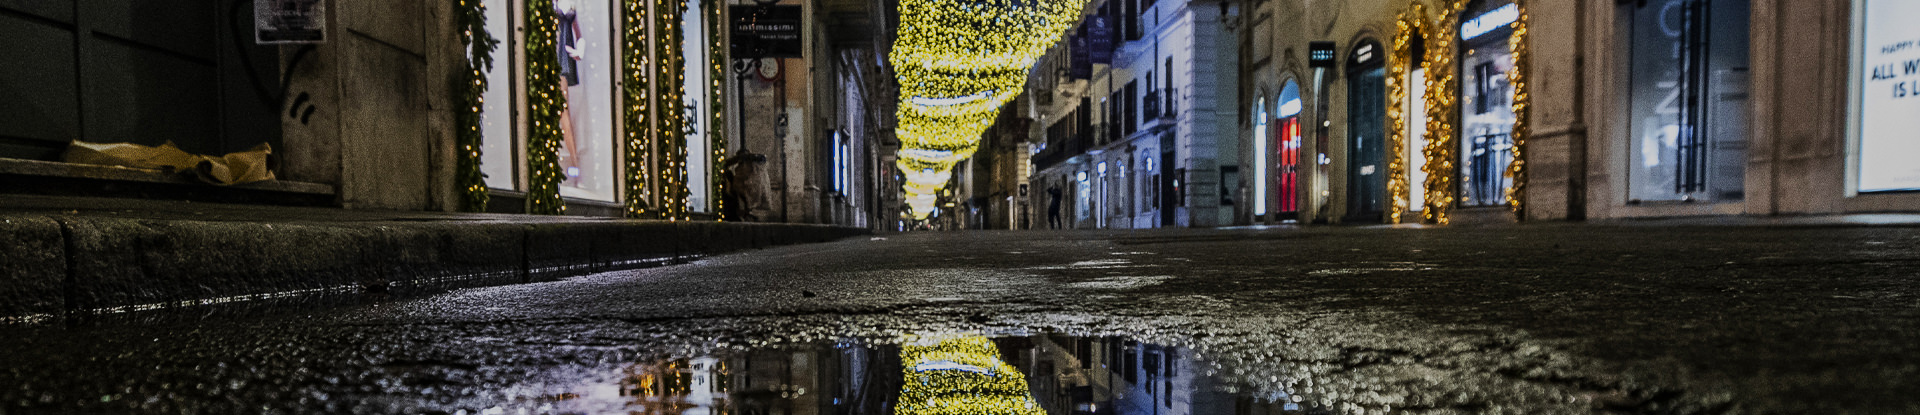 Le luminarie di natale di via del corso di Roma by light Acea